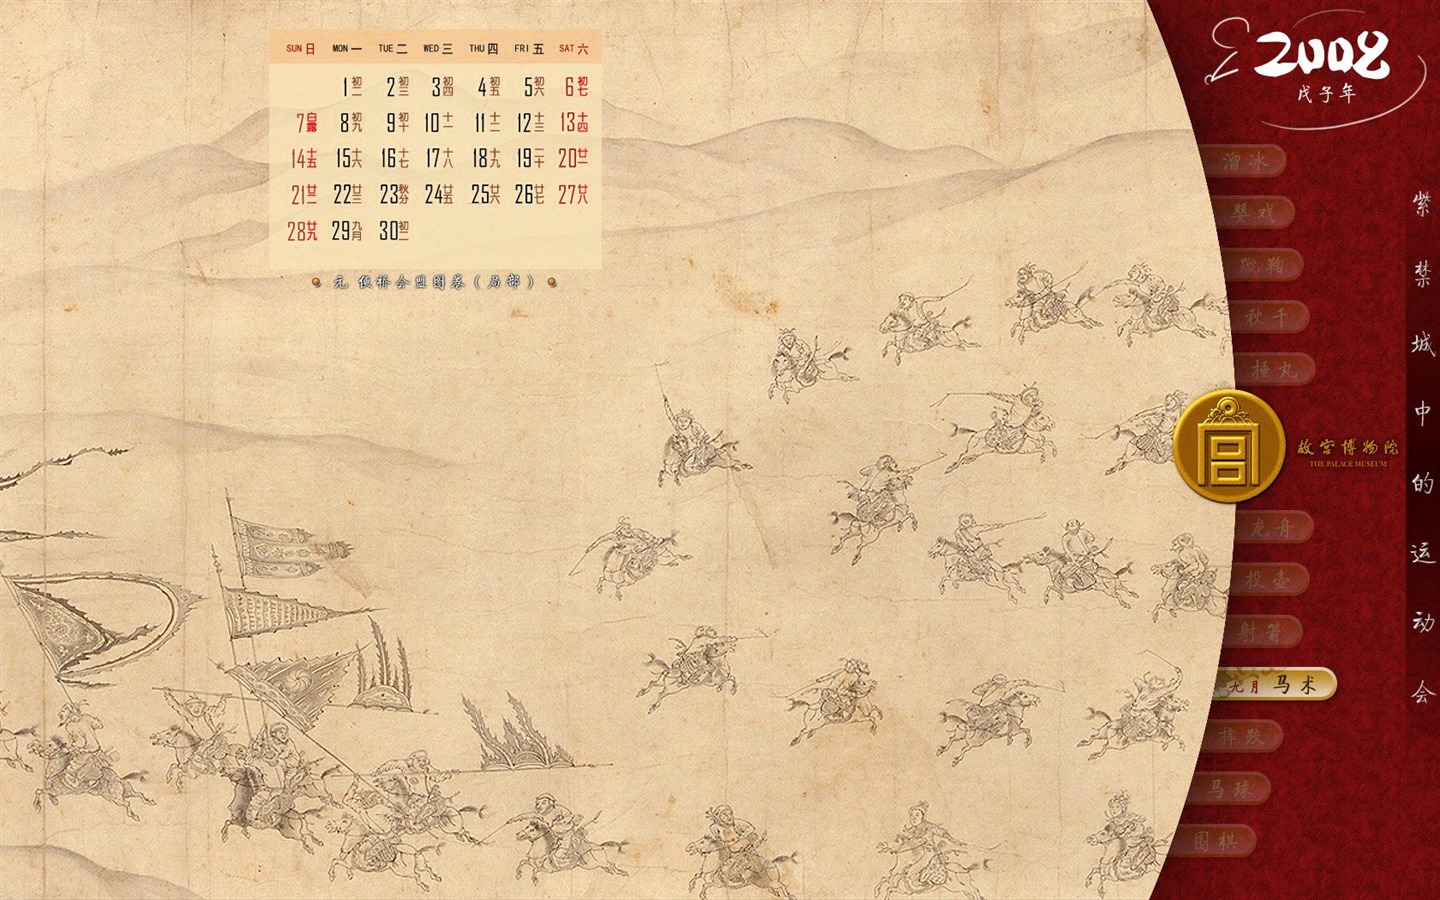 北京故宫博物院 文物展壁纸(二)12 - 1440x900